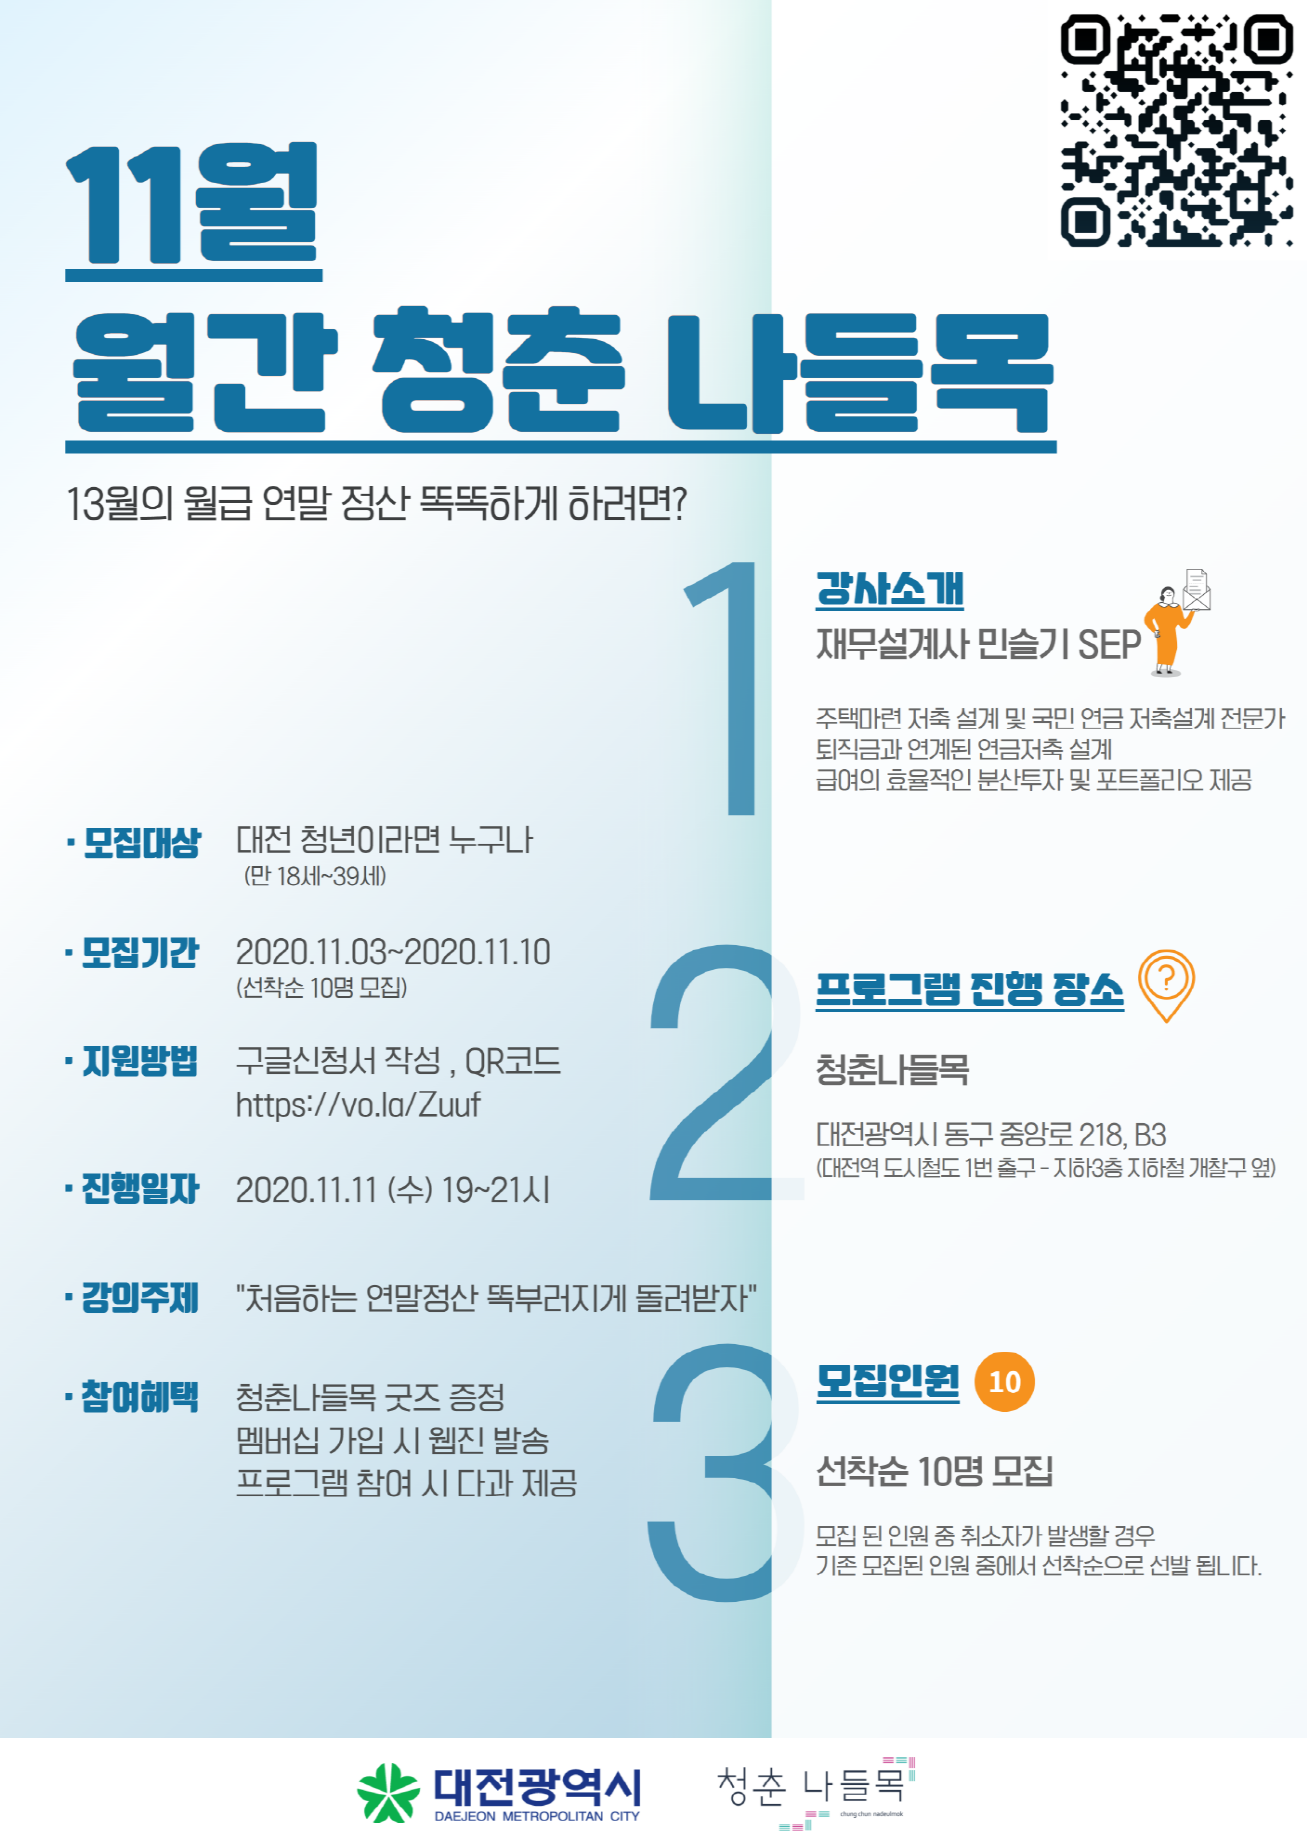 대전광역시 청춘나들목, 연말정산 똑똑하게 돌려 받는 법! (11월 11일)